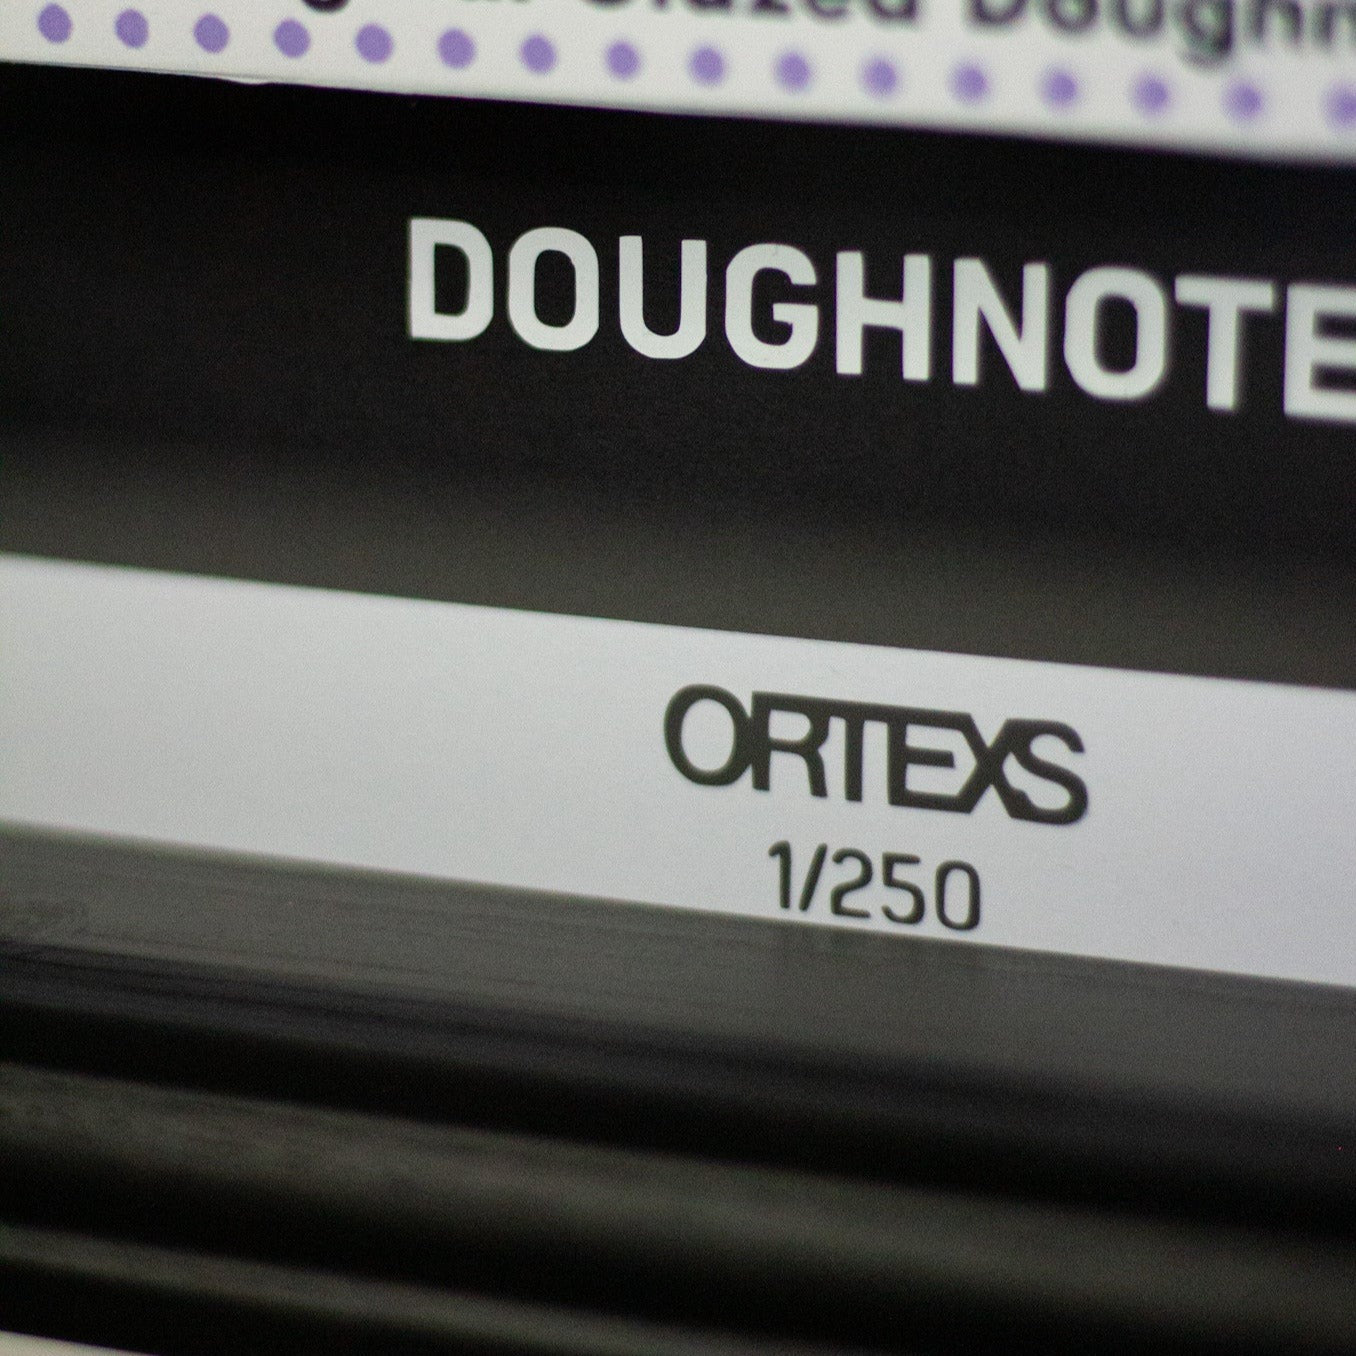 ORTX - DOUGHNOTES £20